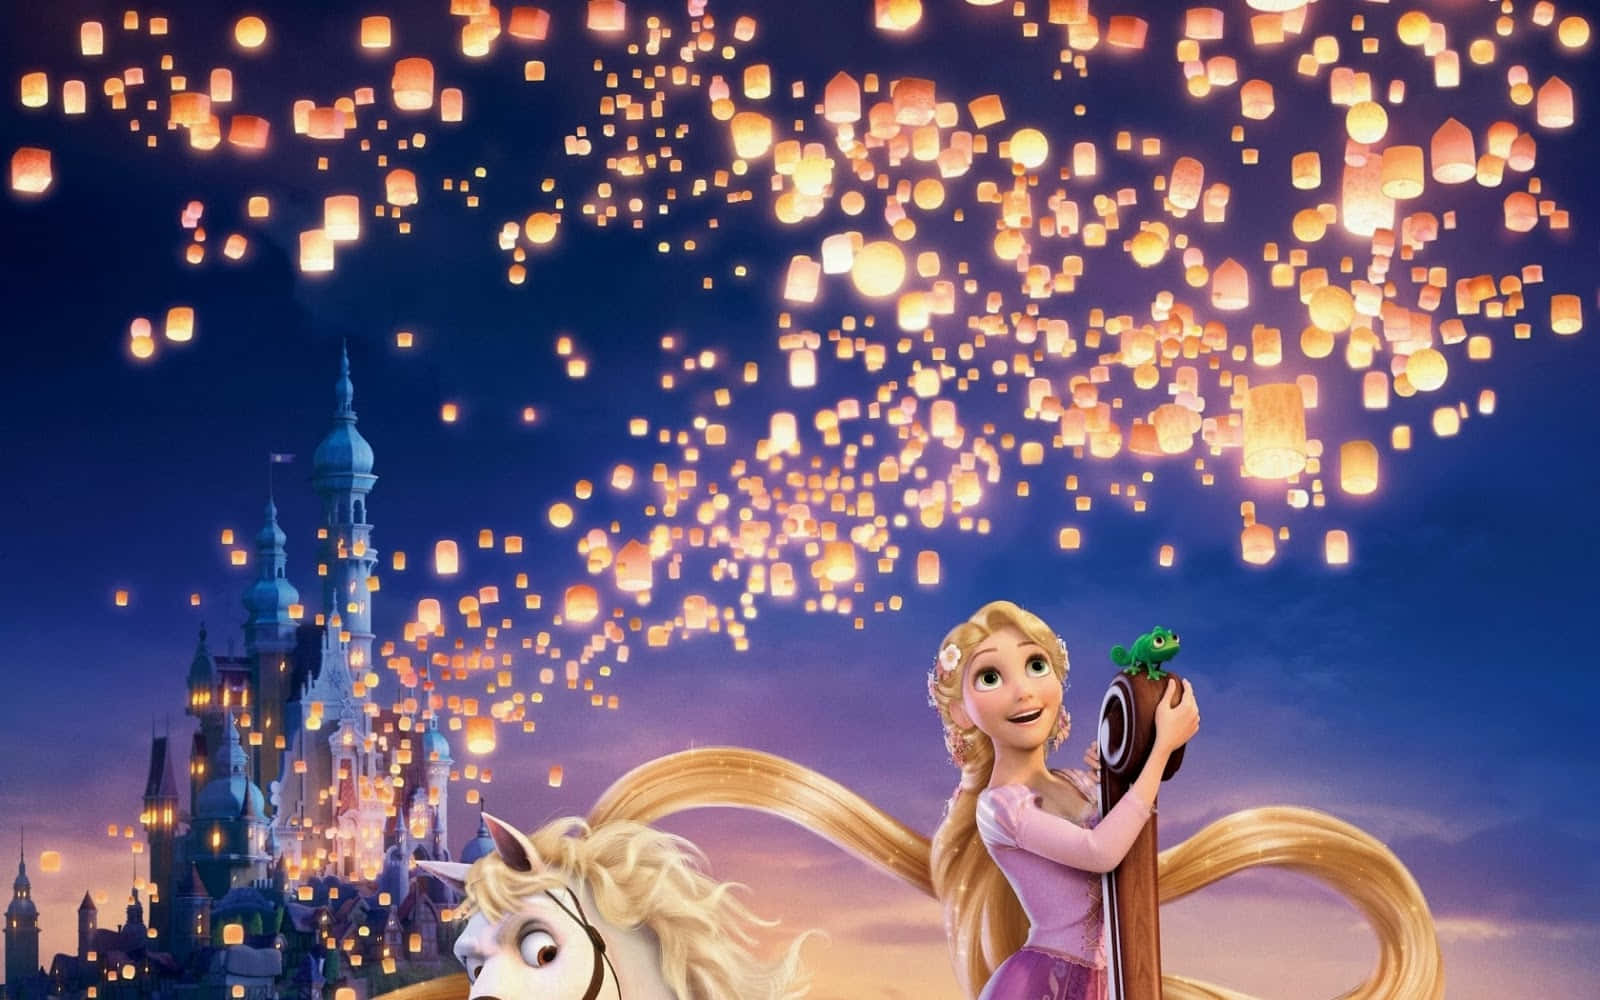 Princesade Cuento De Hadas Rapunzel Con Su Mágico Cabello Dorado.